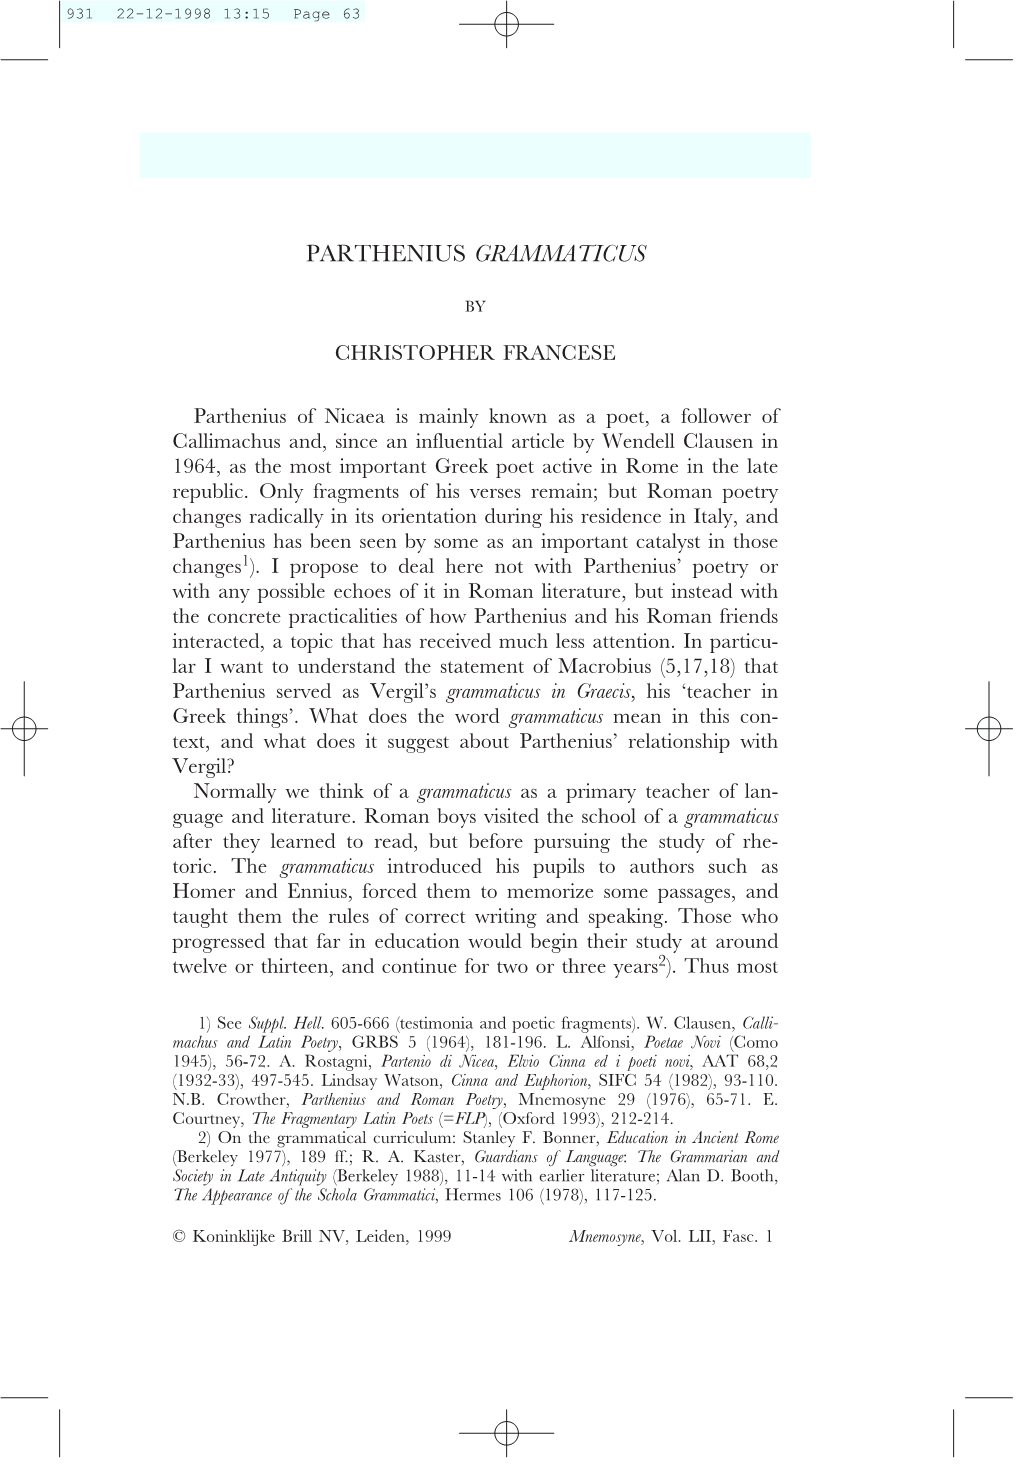 Parthenius Grammaticus